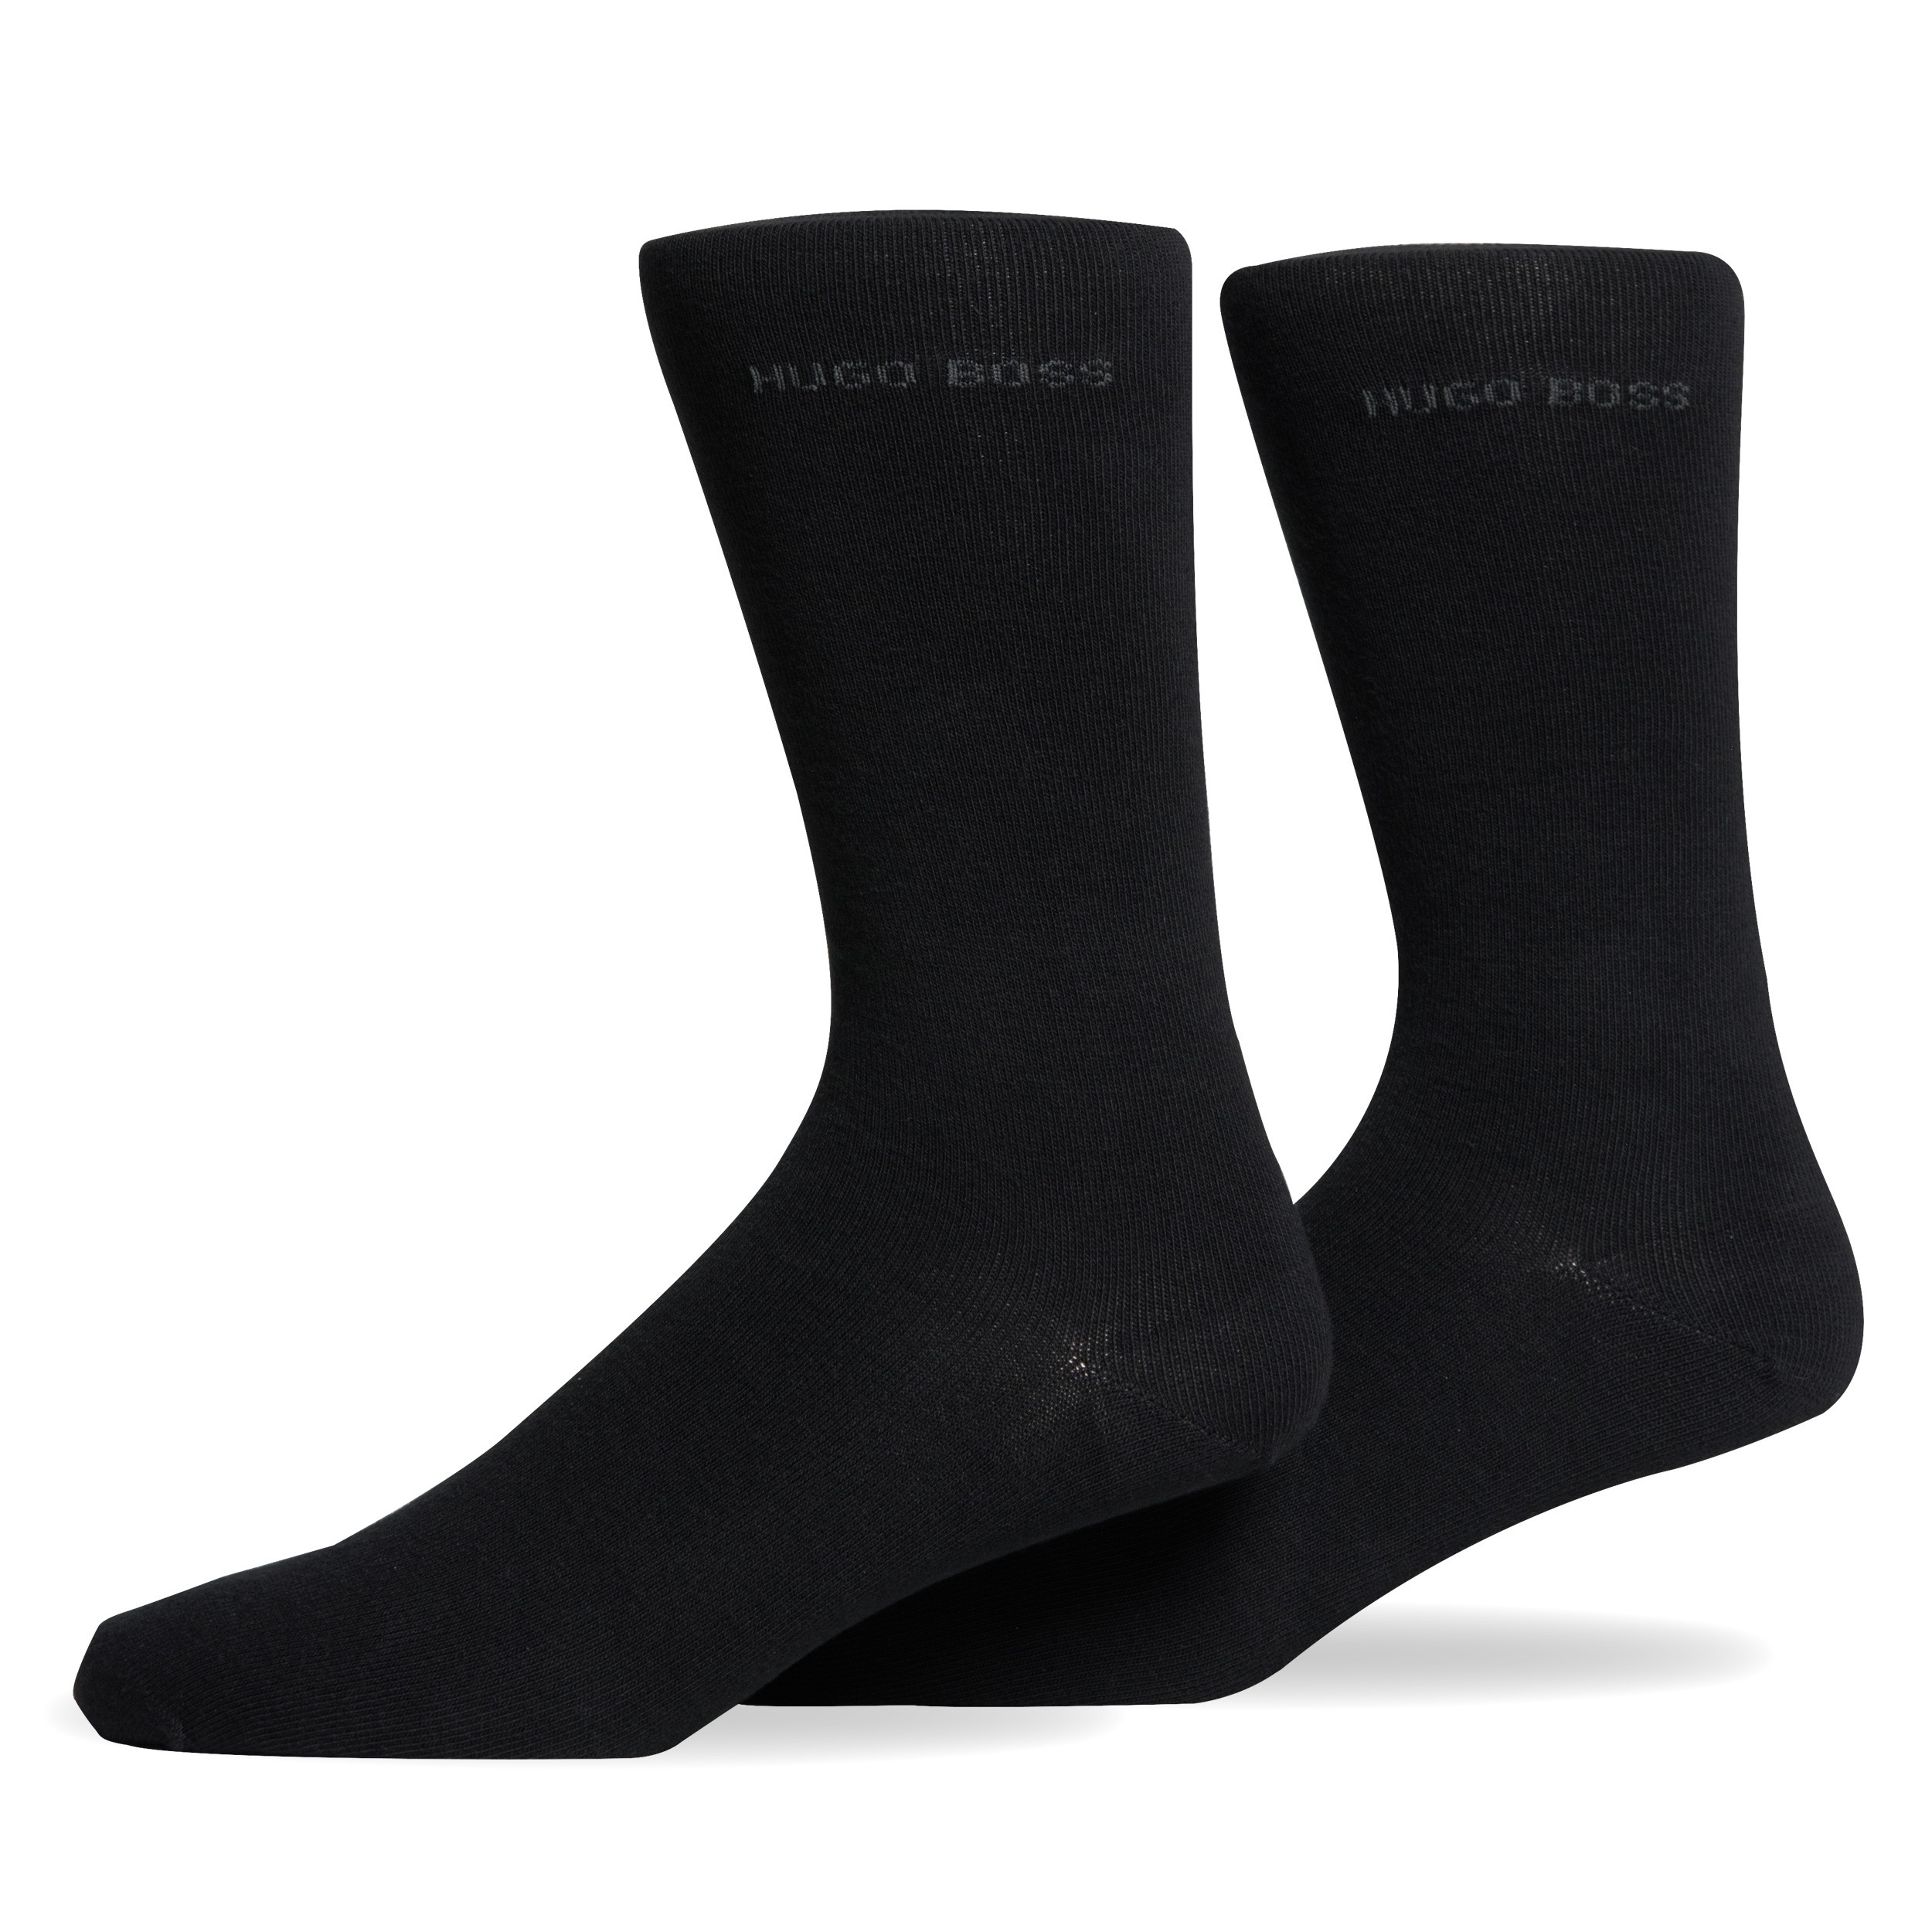 HUGO BOSS 2 Pack Gift Set Socks Black